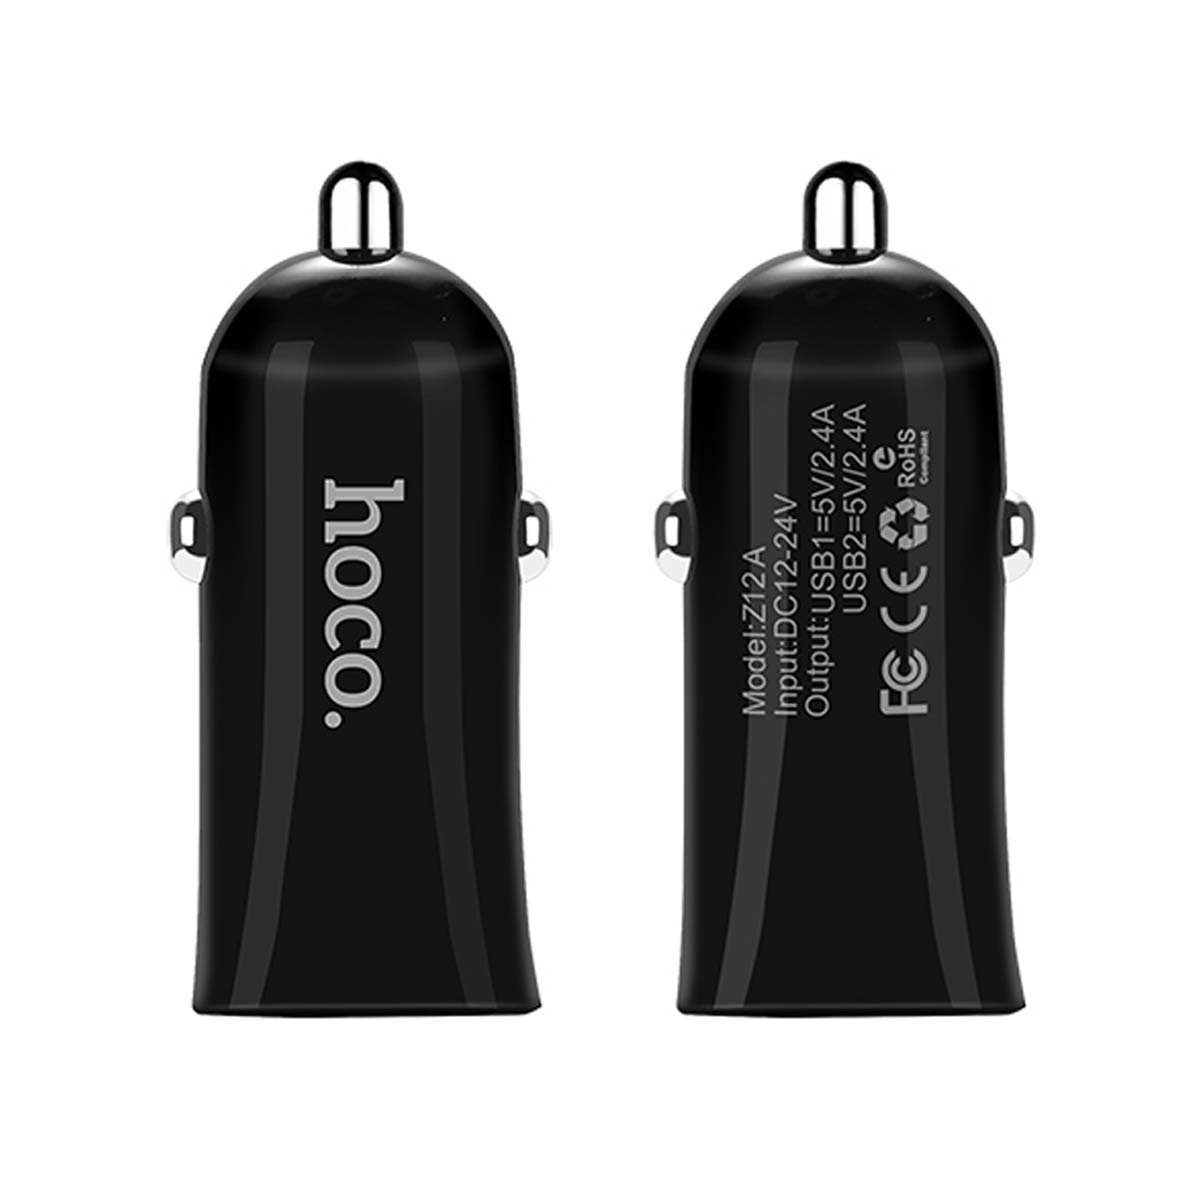 АЗУ (Автомобильное зарядное устройство) HOCO Z12 Elite, 2.4A, 2 USB, цвет черный